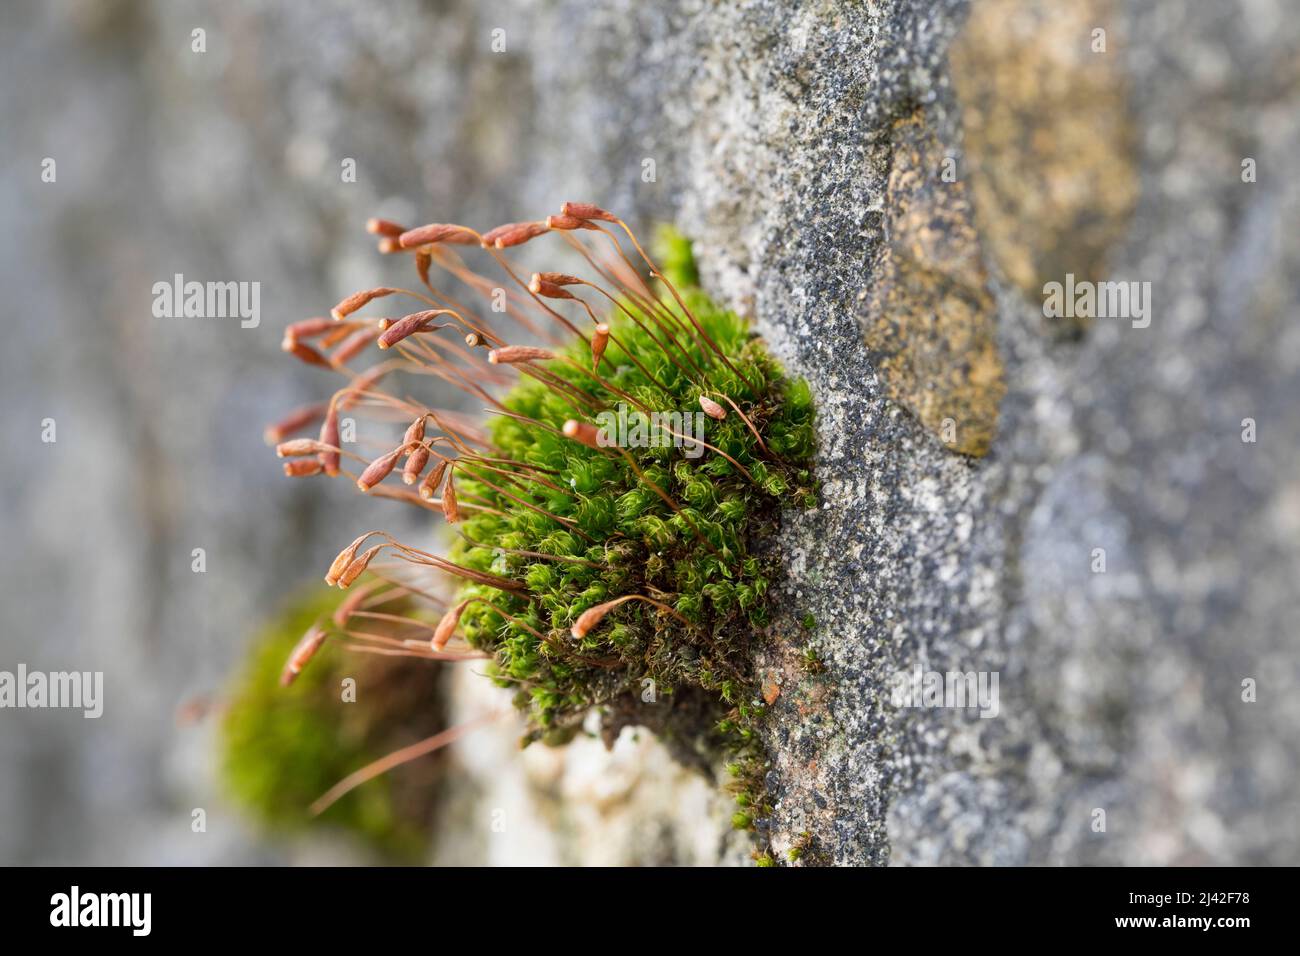 Haarblättriges Birnmoos, Scheuerlappen-Moos, an einer Steinmauer, Mauer, Bryum capillare, Ptychostomum capillare Stock Photo